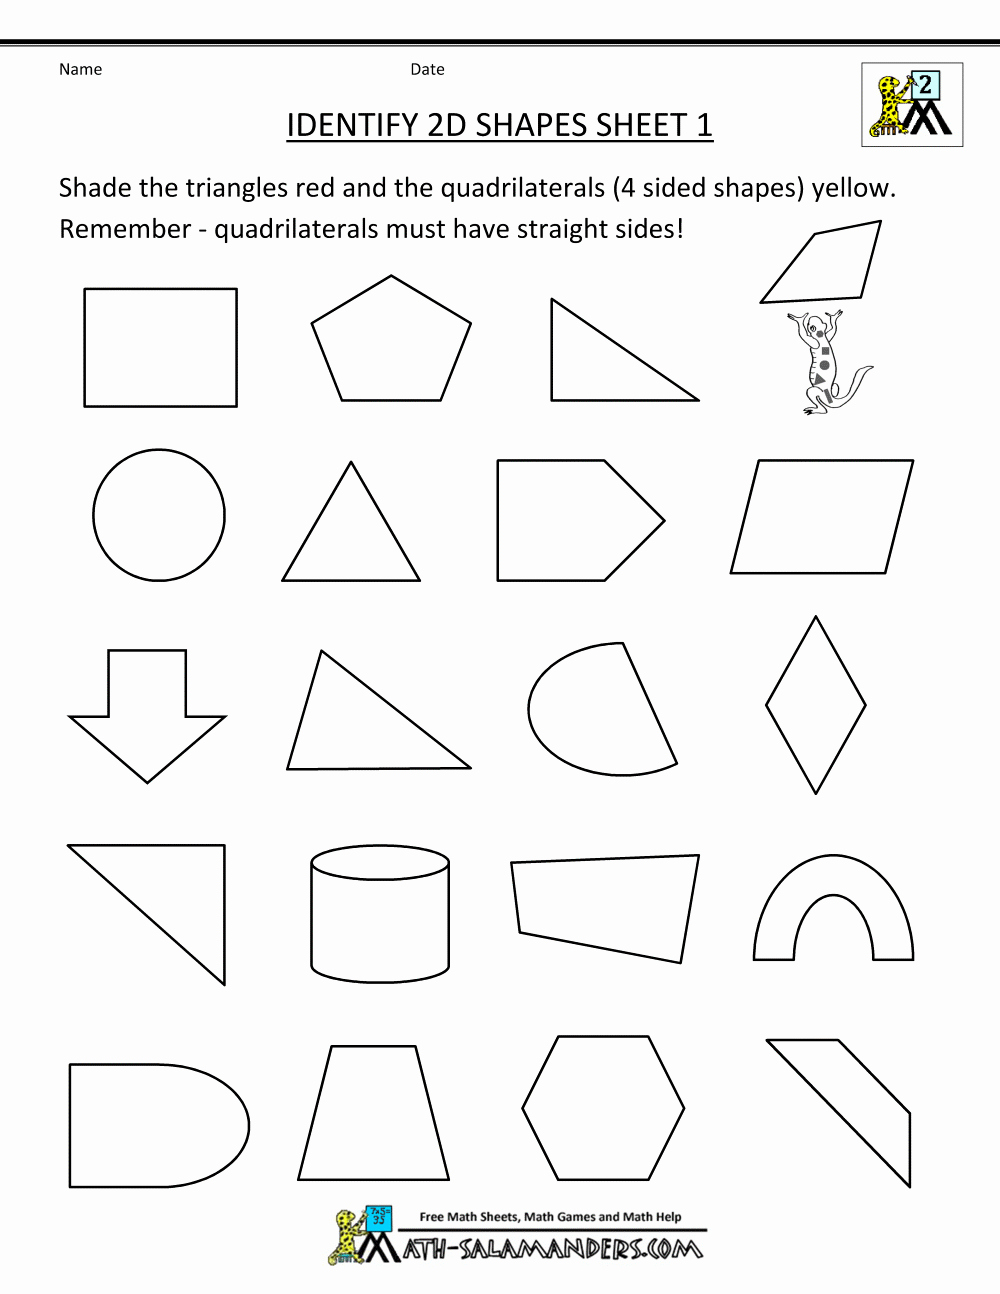 Shapes Worksheets 2nd Grade Best Of 88 Shapes Worksheet Second Grade Kidworksheet